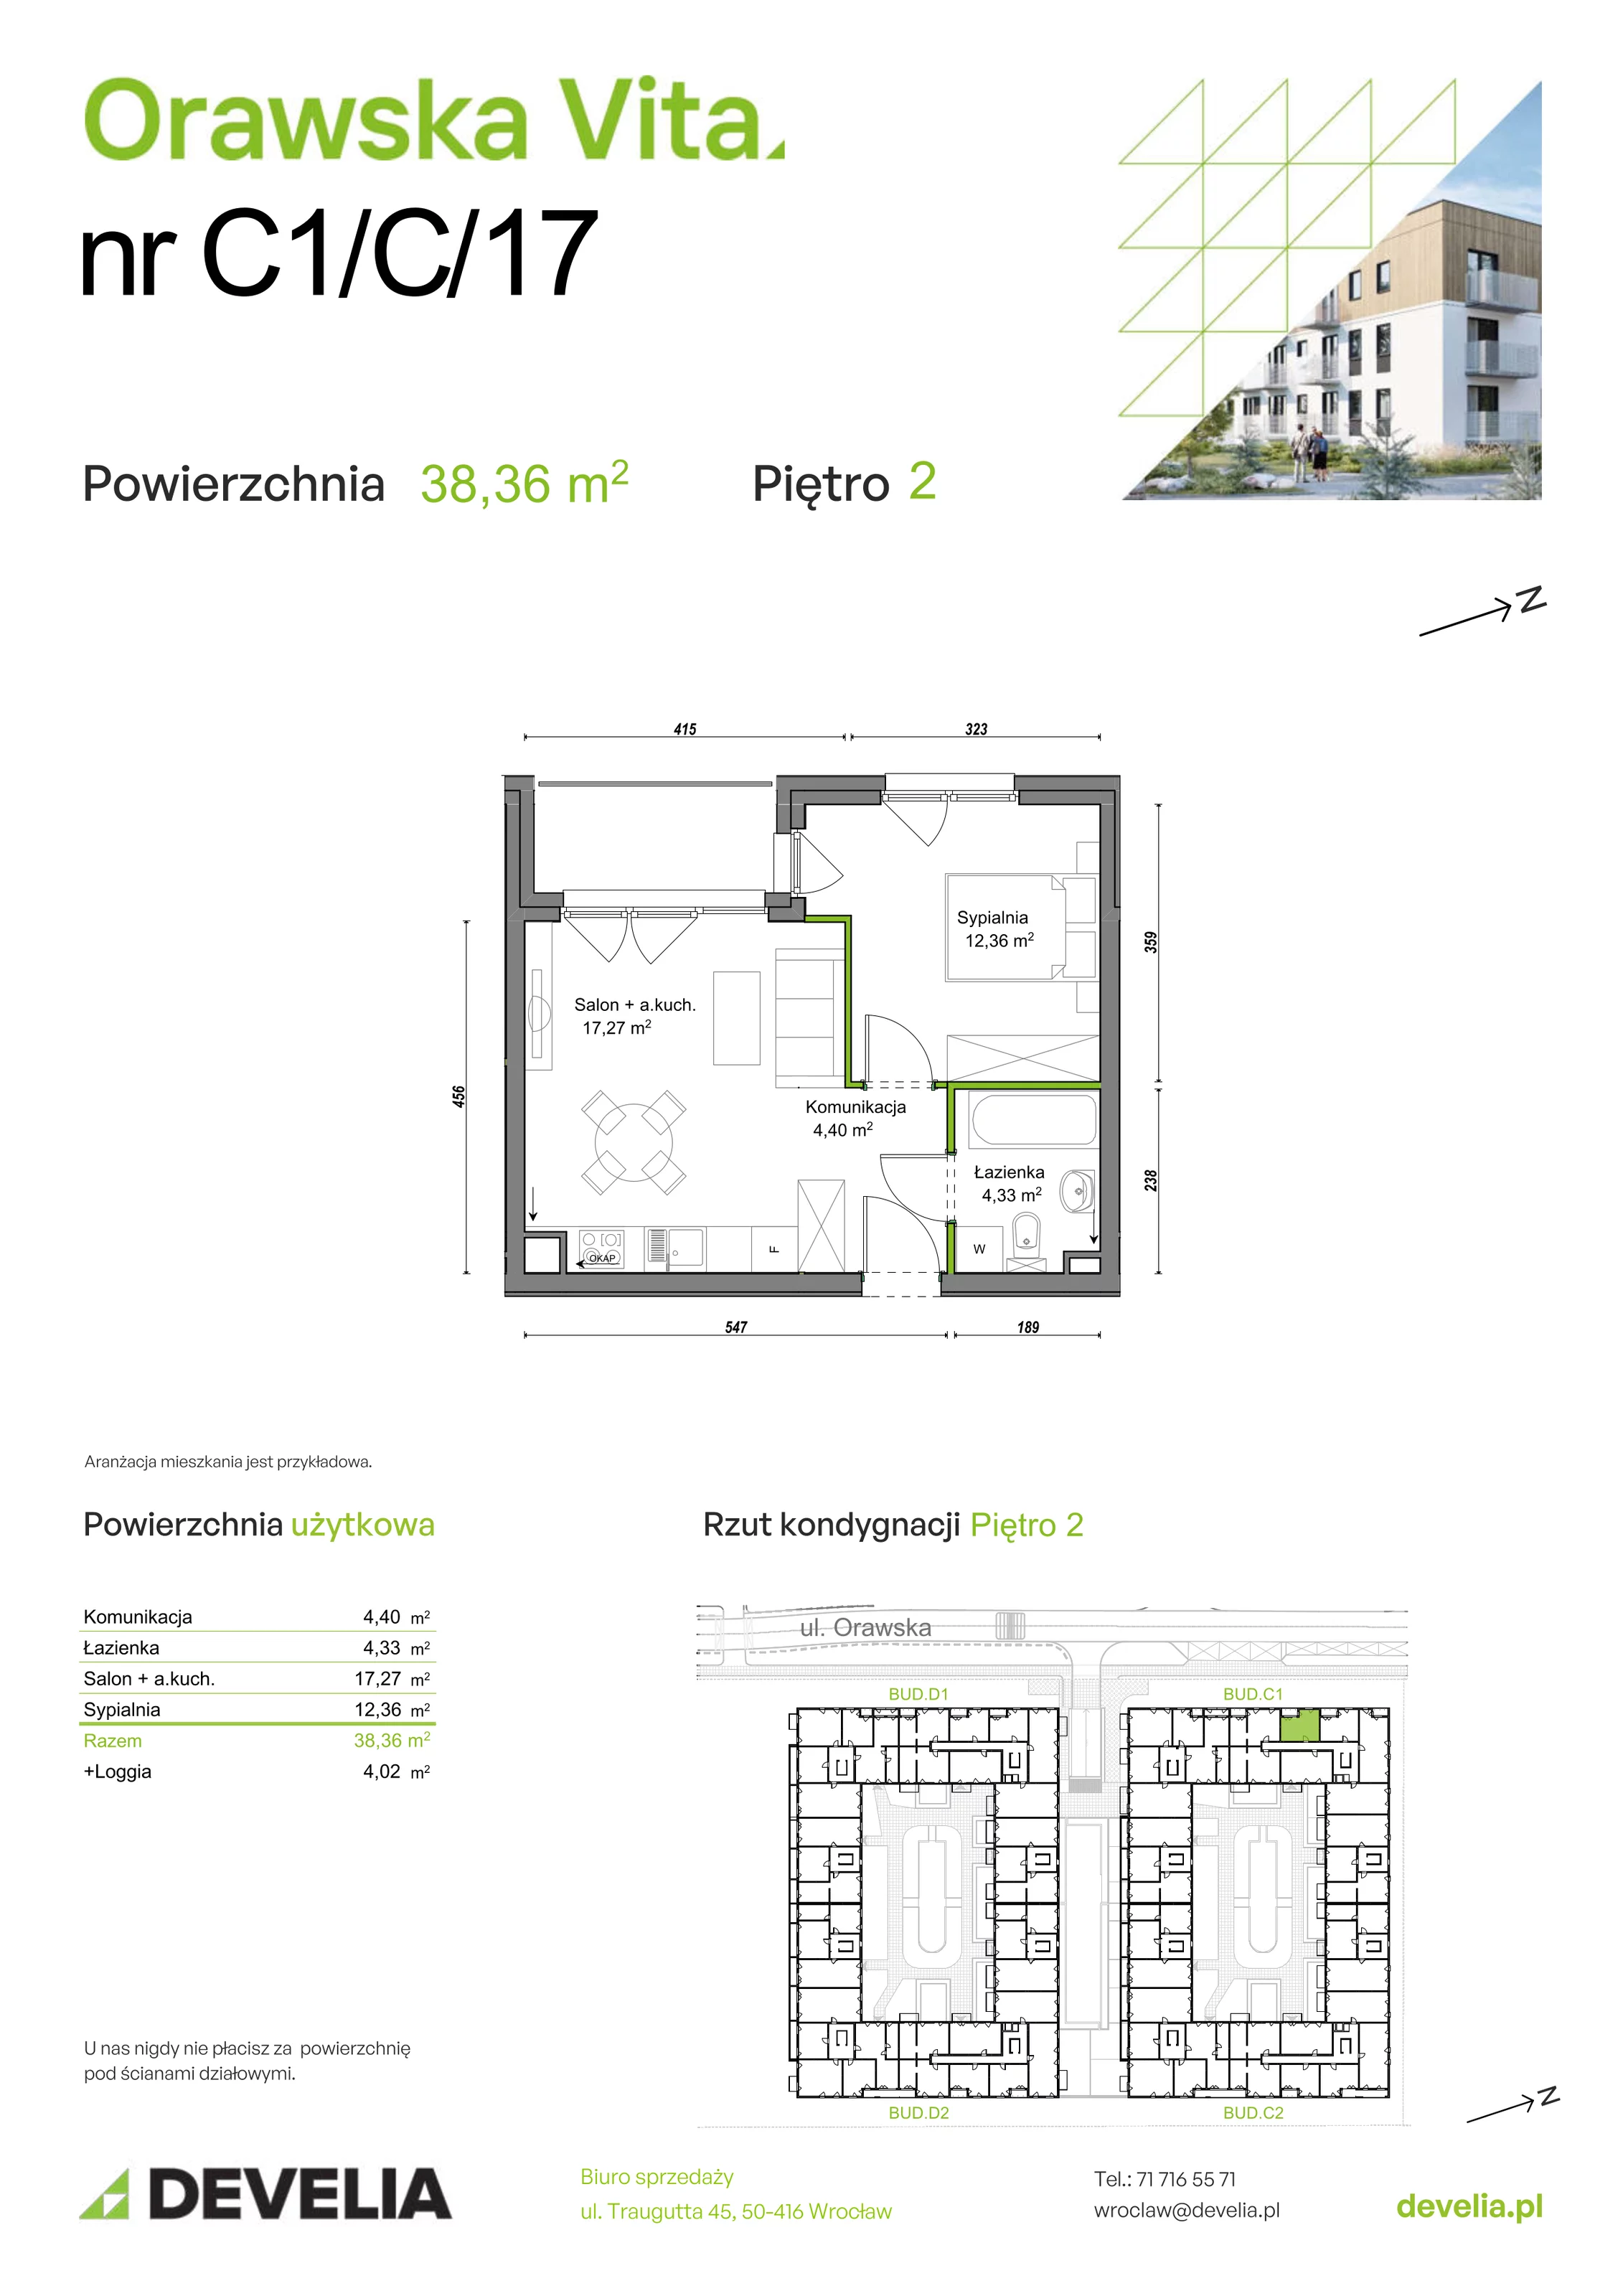 Mieszkanie 38,36 m², piętro 2, oferta nr C1/C/17, Orawska Vita, Wrocław, Ołtaszyn, Krzyki, ul. Orawska 73